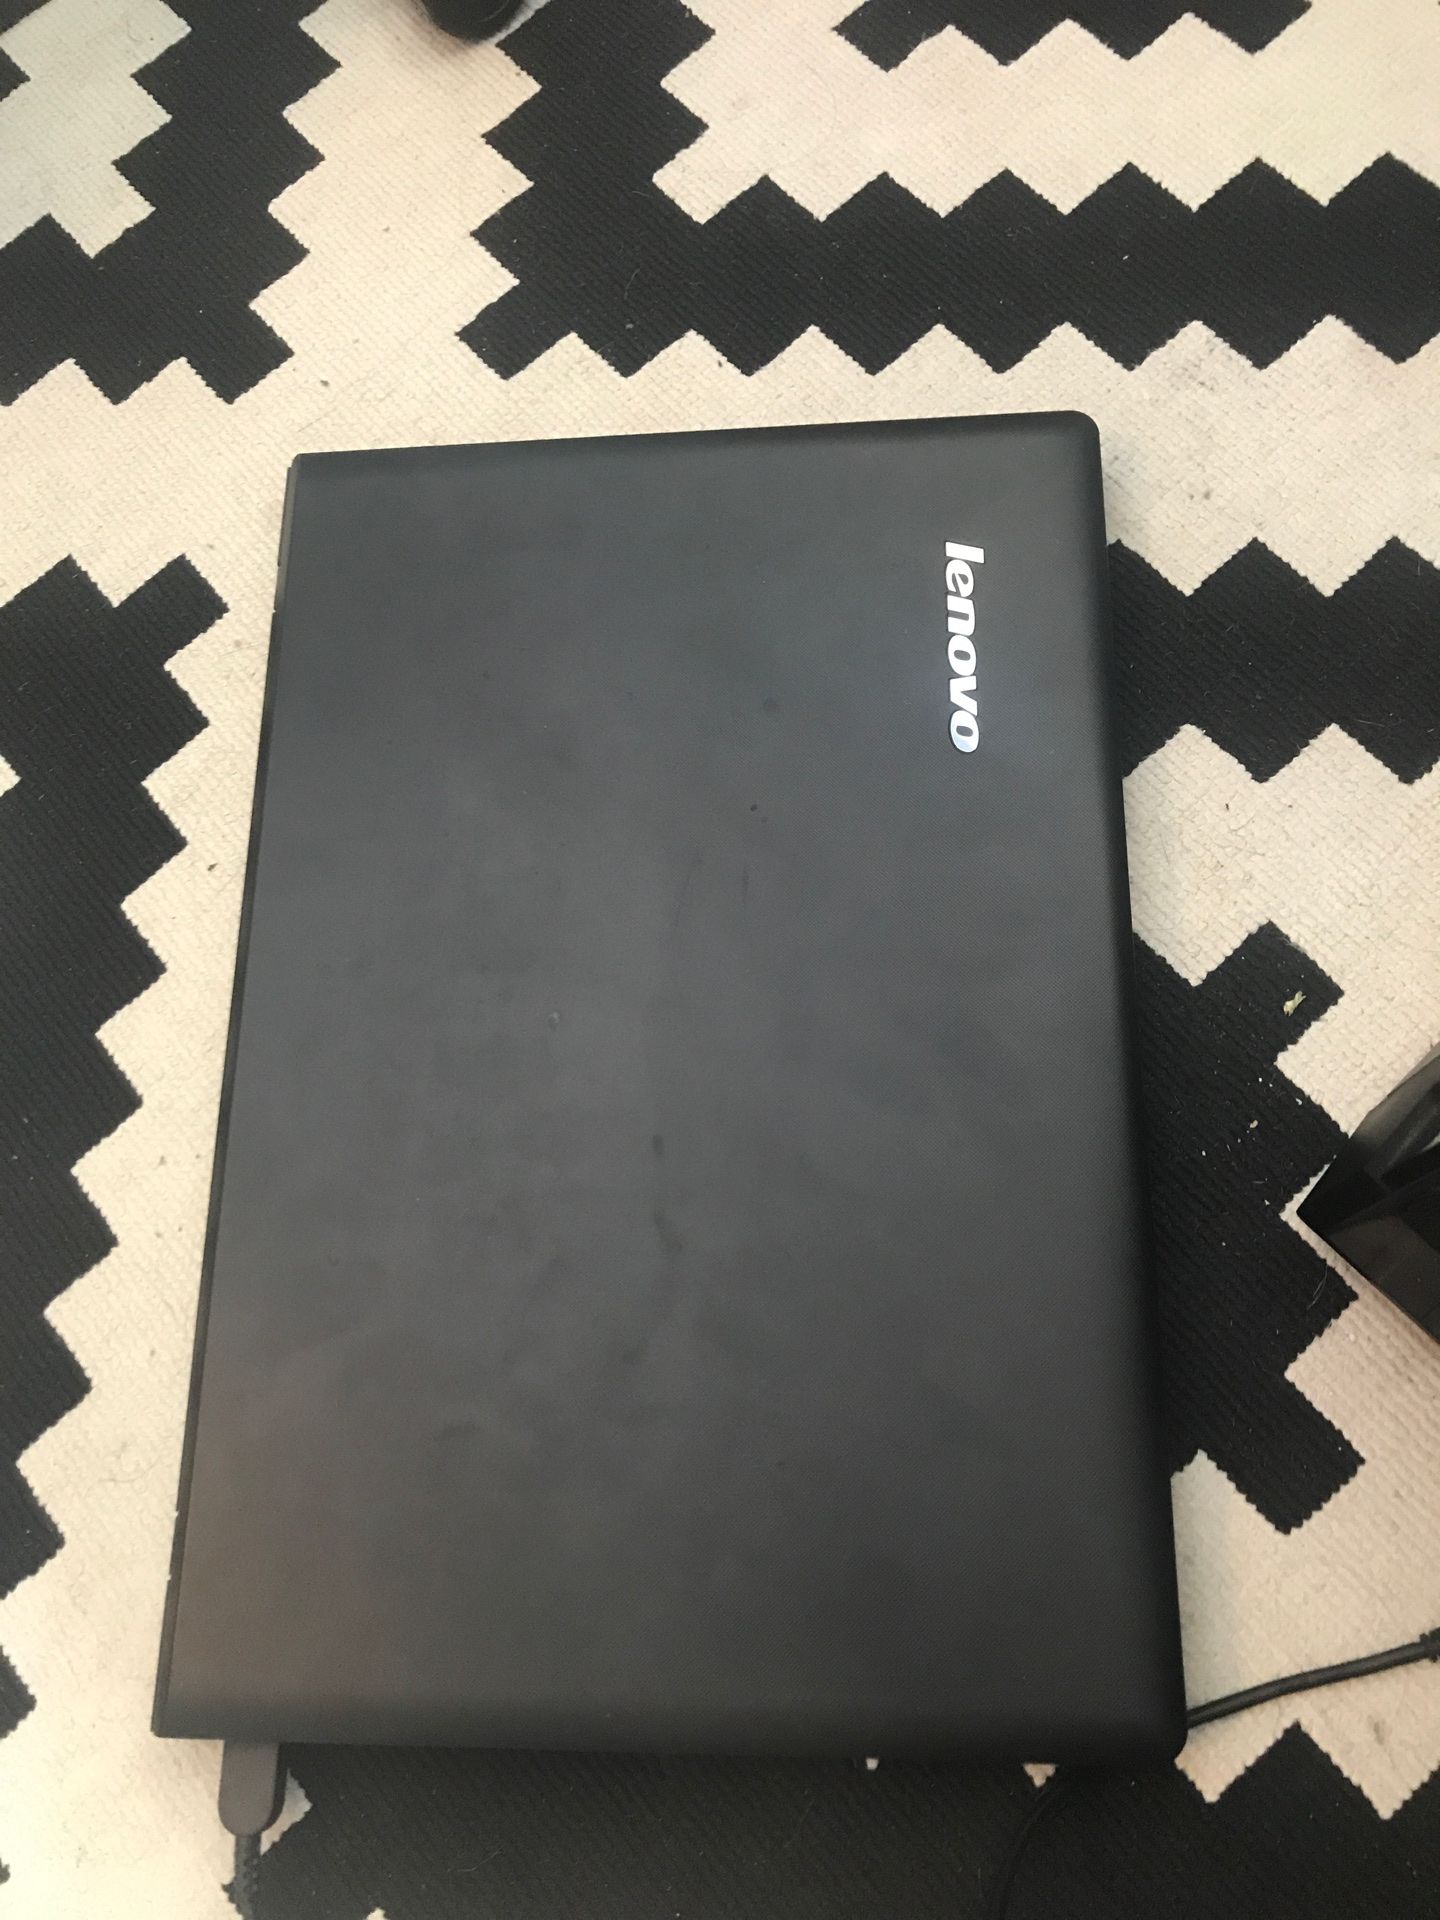 lenovo laptop 15.6” i3 6100u 4 GB ram 500 gb hdd